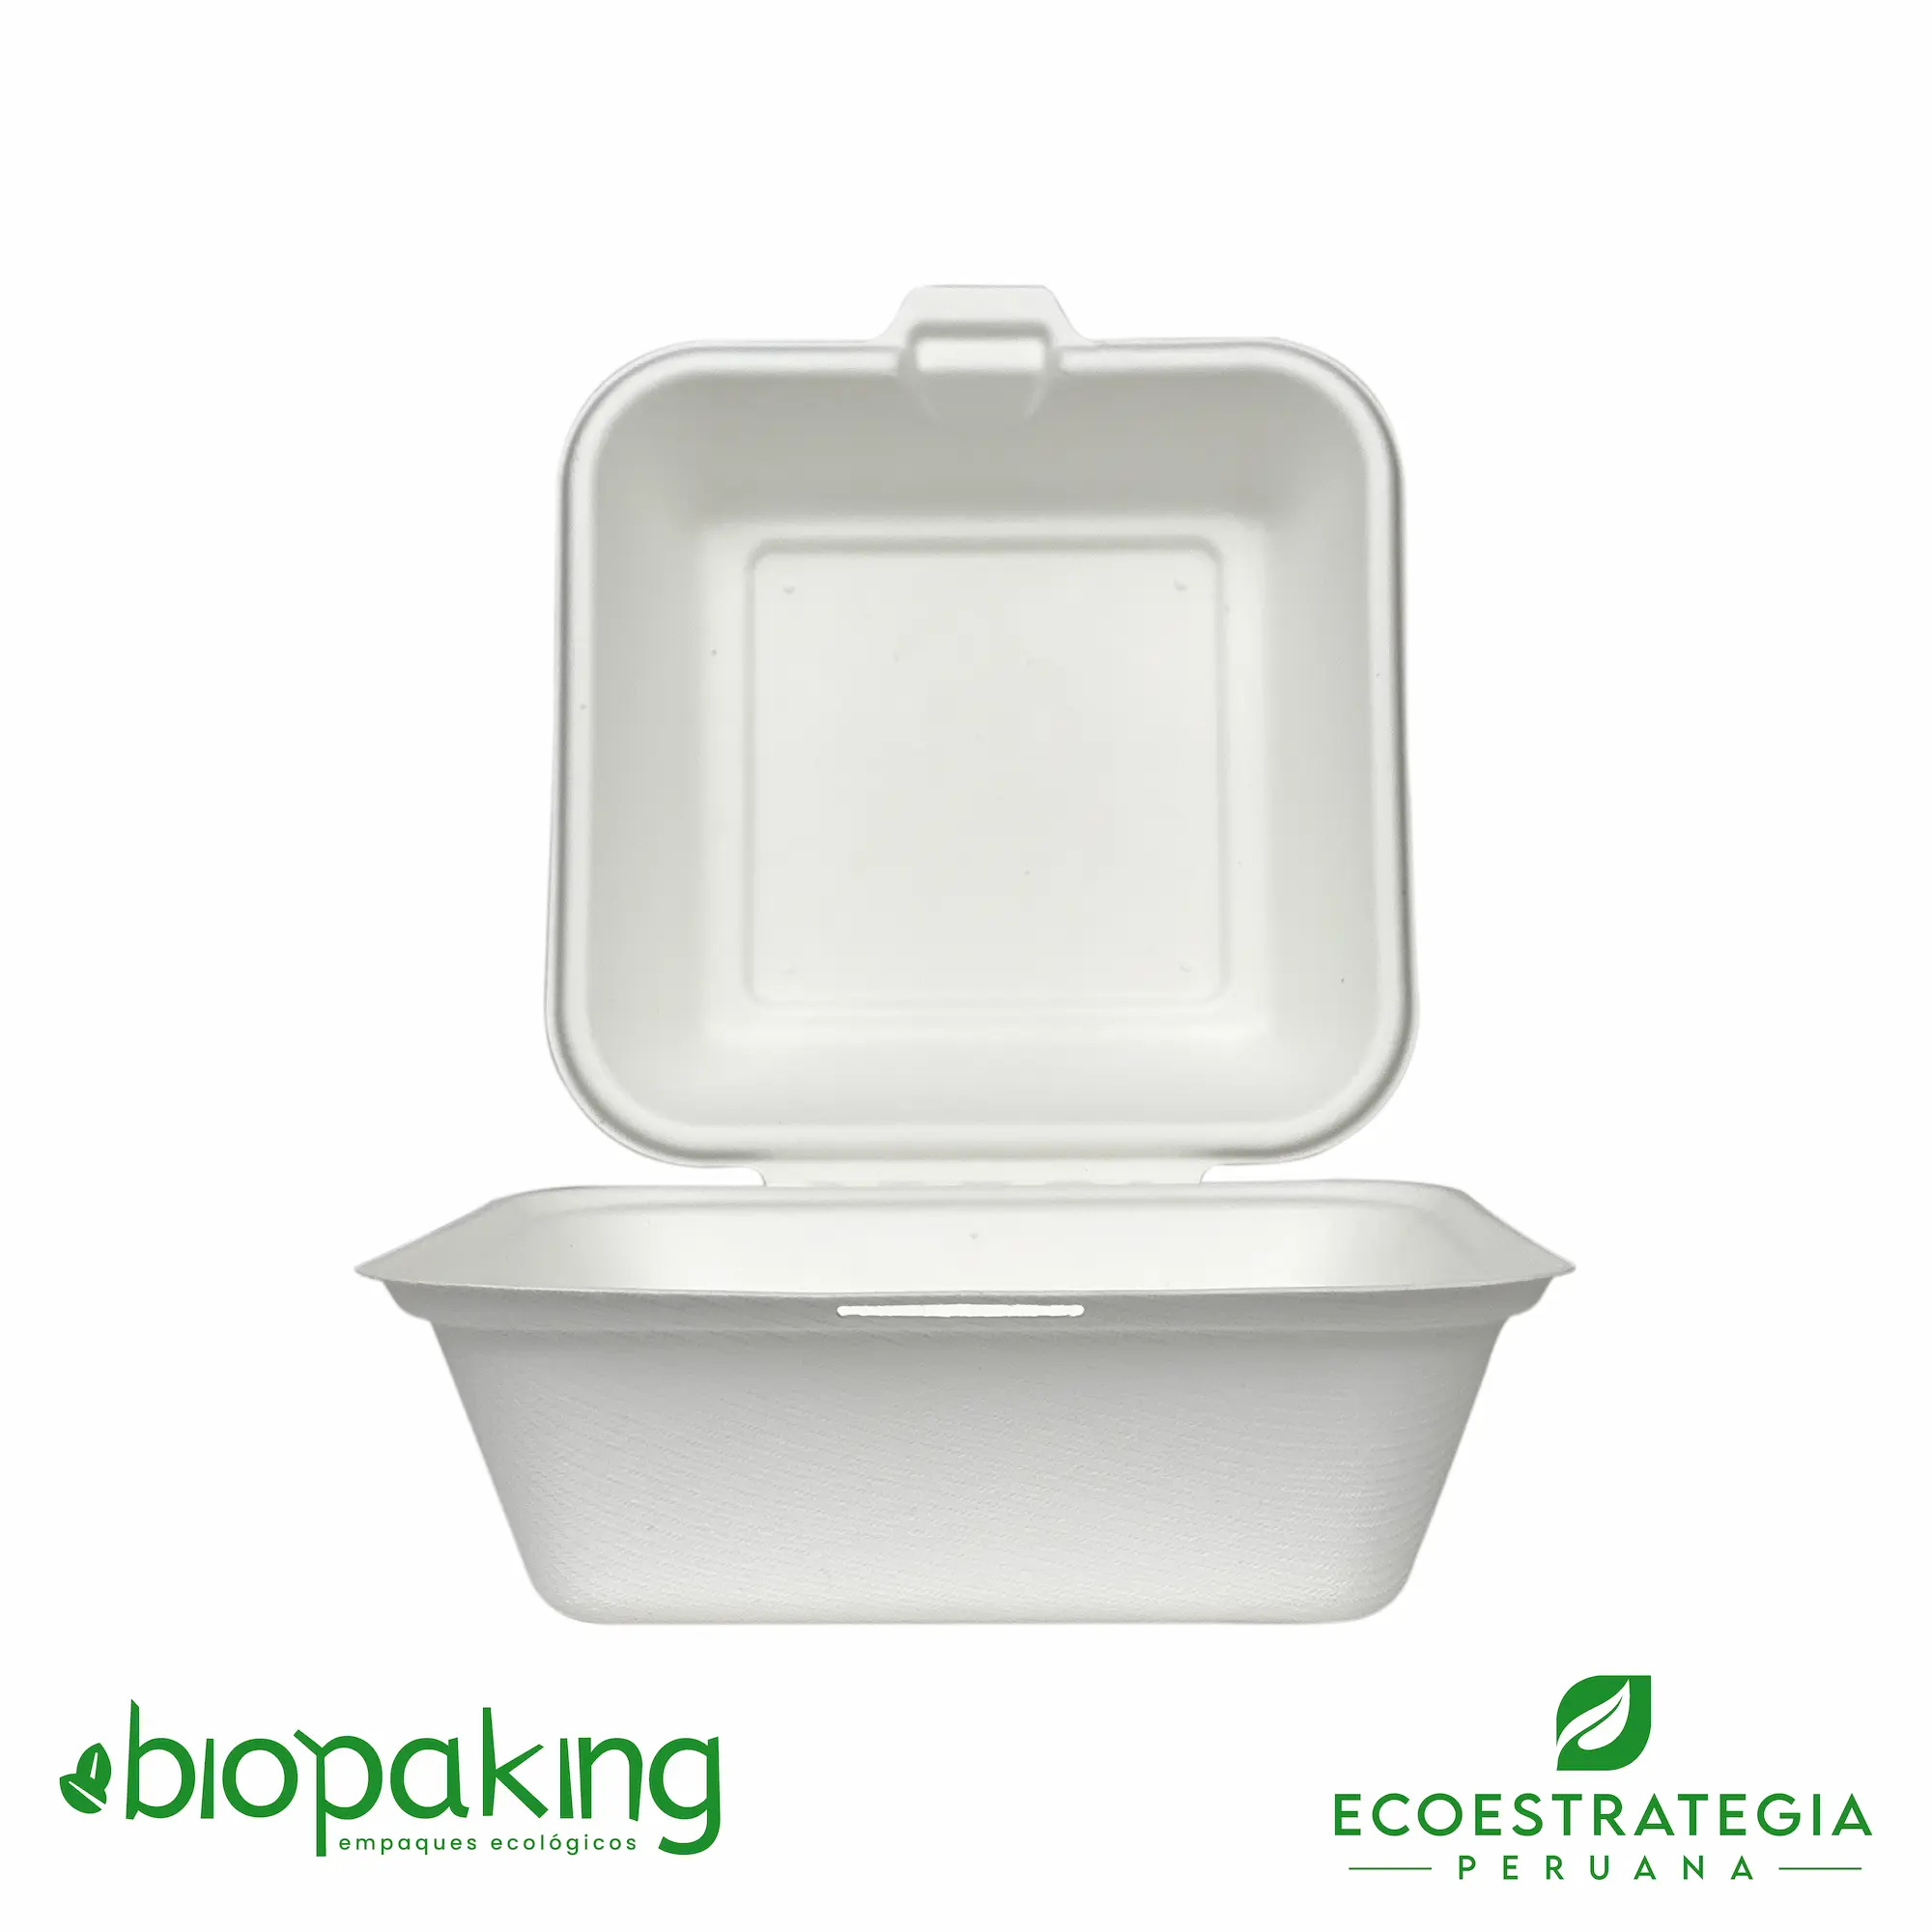 Este envase CT4 tiene una capacidad de 500ml. Producto de materiales biodegradables, hecho a base de fibra de caña de azúcar, empaques y tapers para comidas